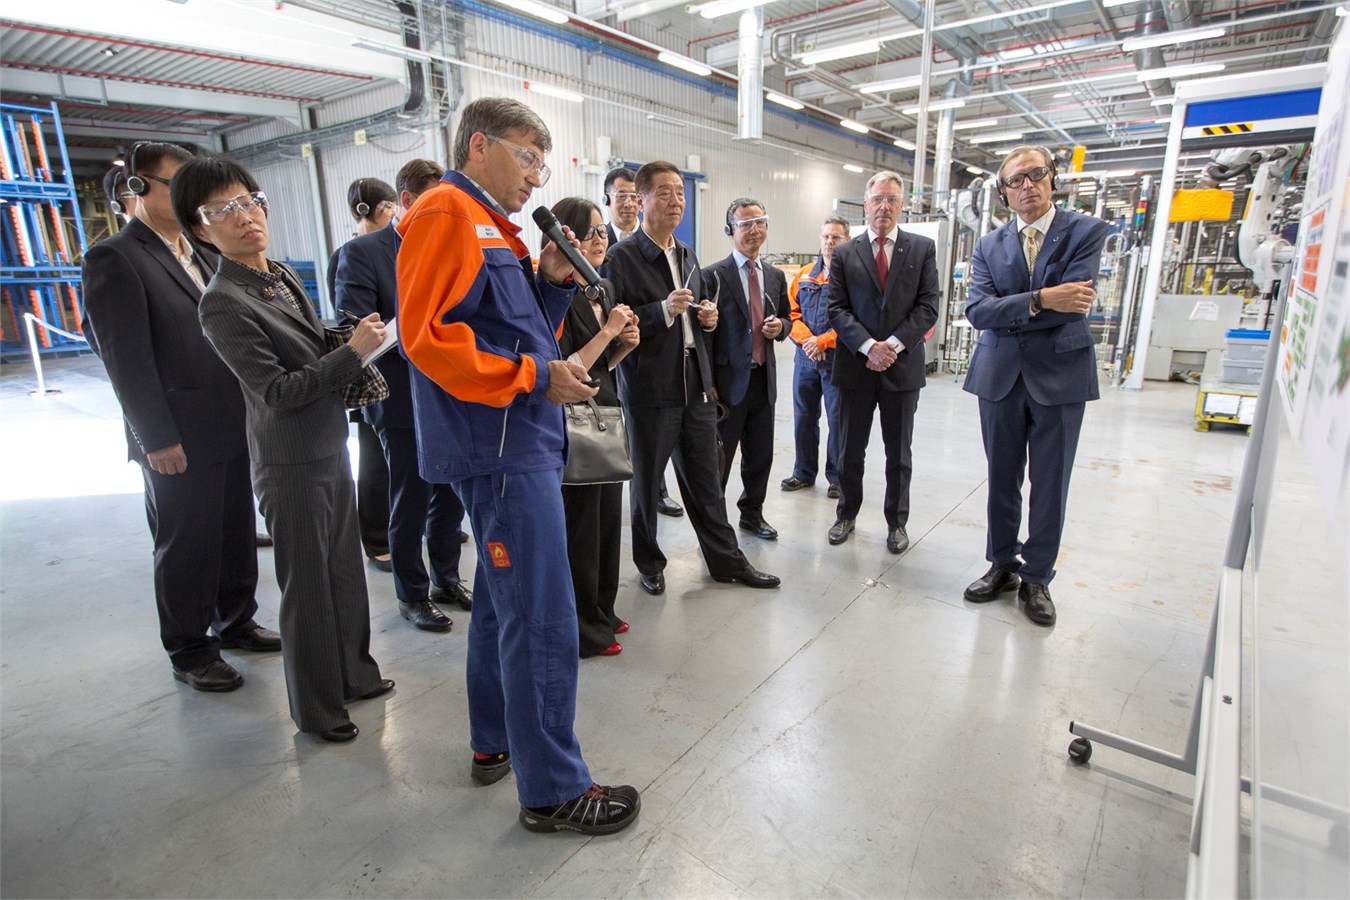 中国海关总署署长于广洲一行参观访问沃尔沃比利时根特工厂